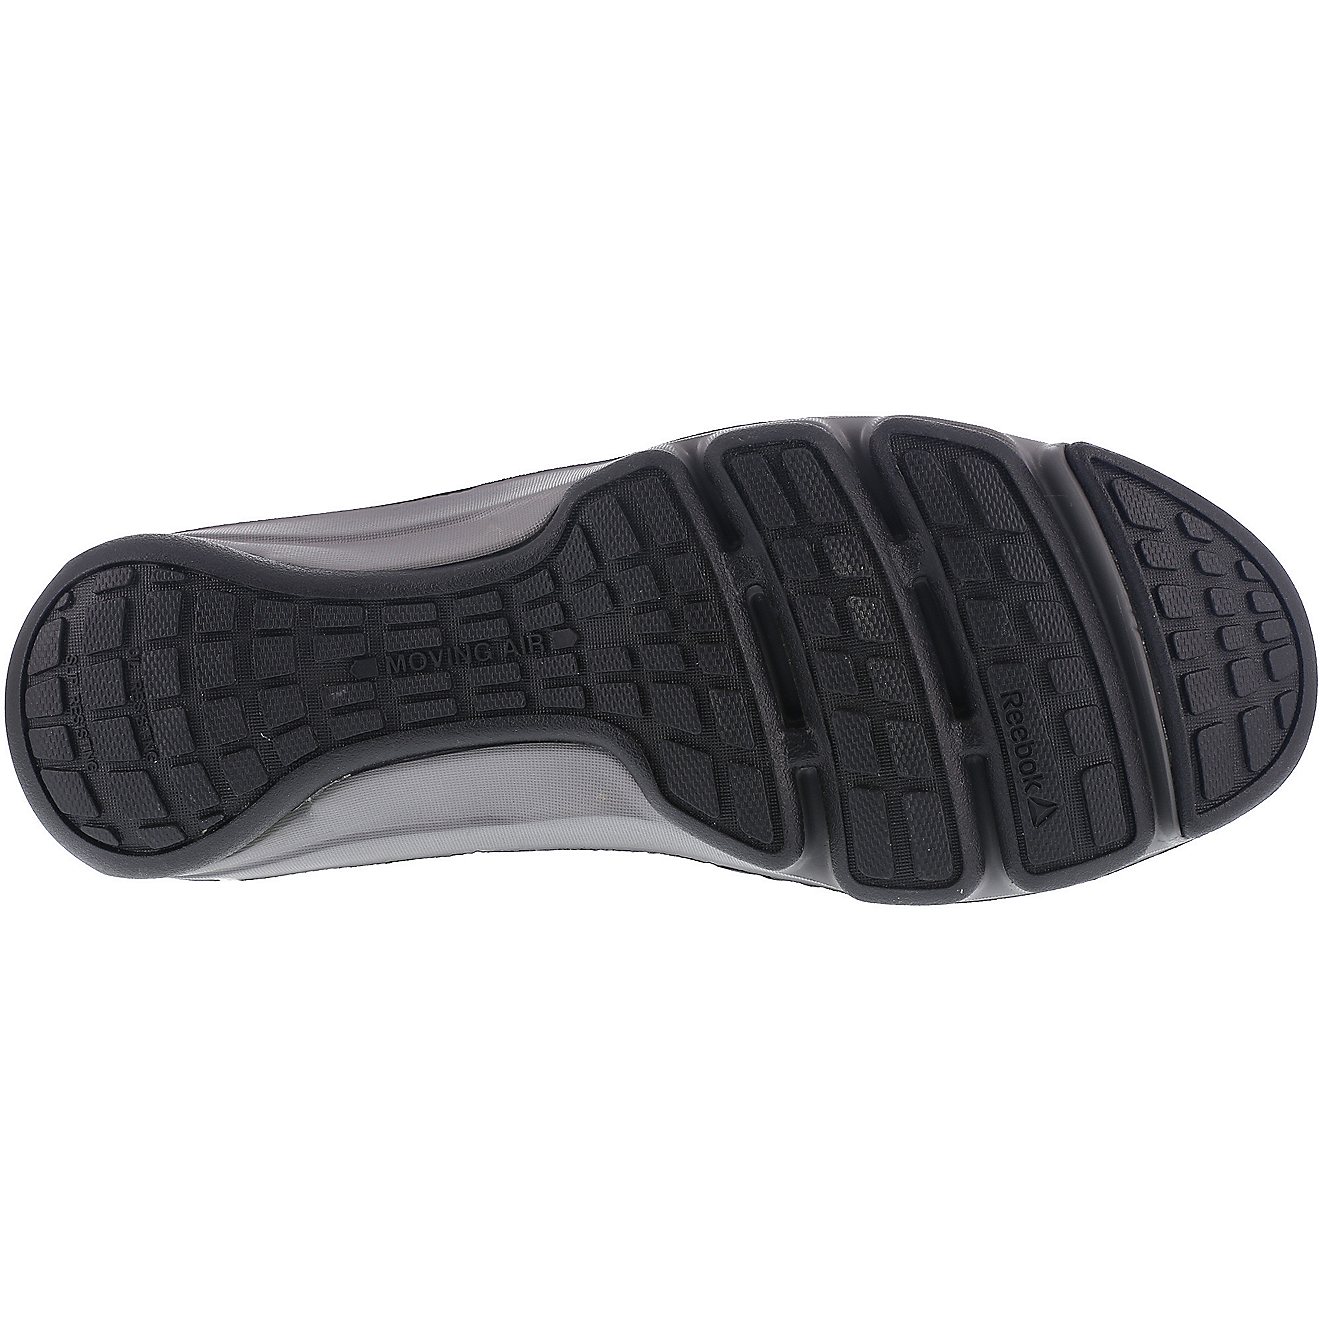 Reebok Men's DMX Flex EH Alloy Toe Lace Up Work Shoes                                                                            - view number 5